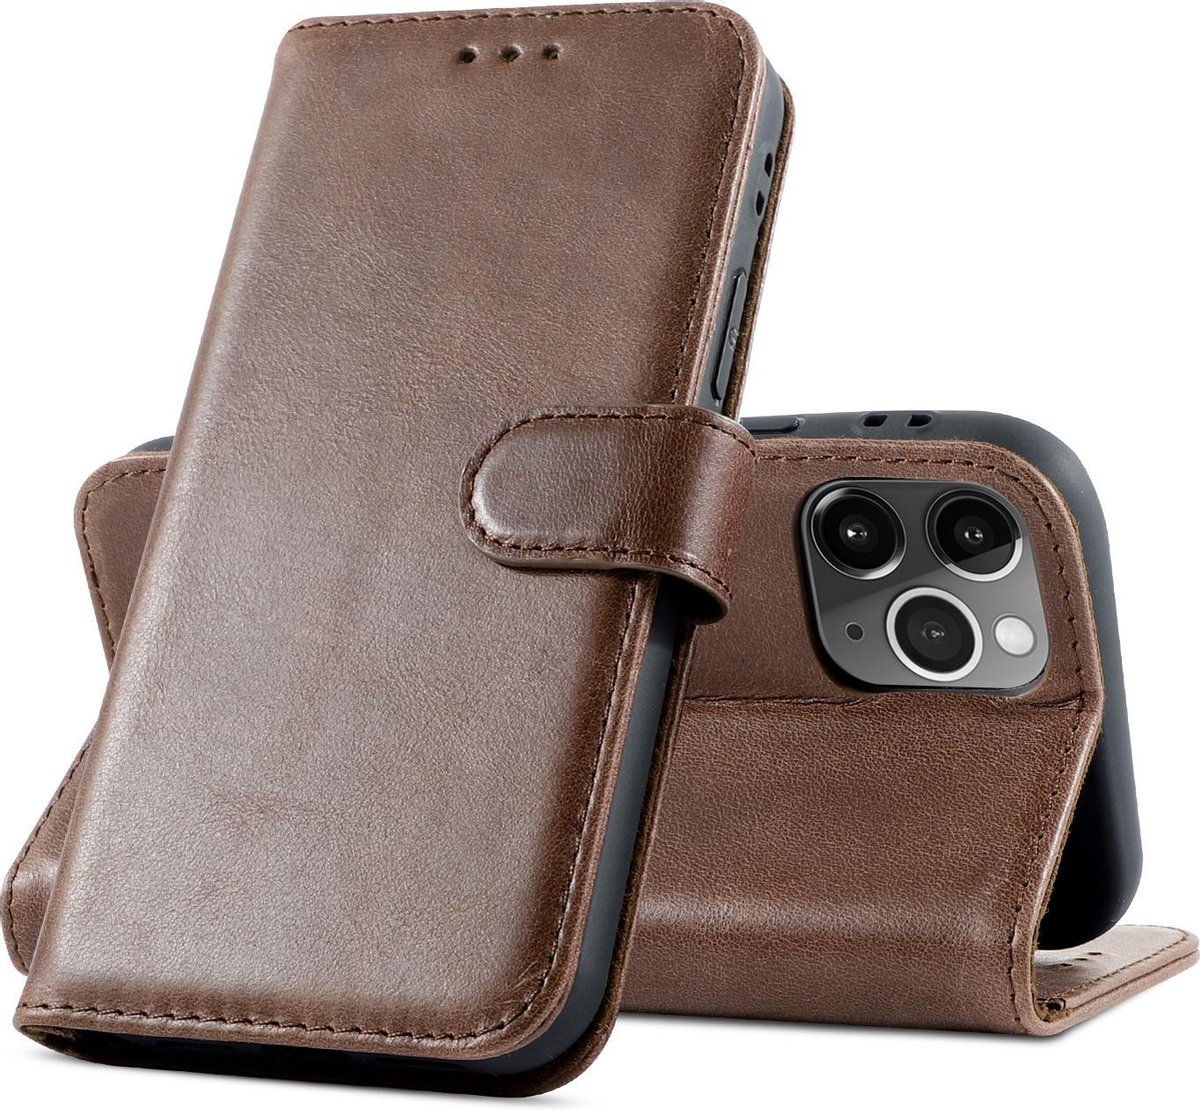 Klassiek Design - Echt Lederen Hoesje - Book Case Telefoonhoesje - Echt Leren Portemonnee Wallet Case - iPhone 12 Pro Max - Mocca